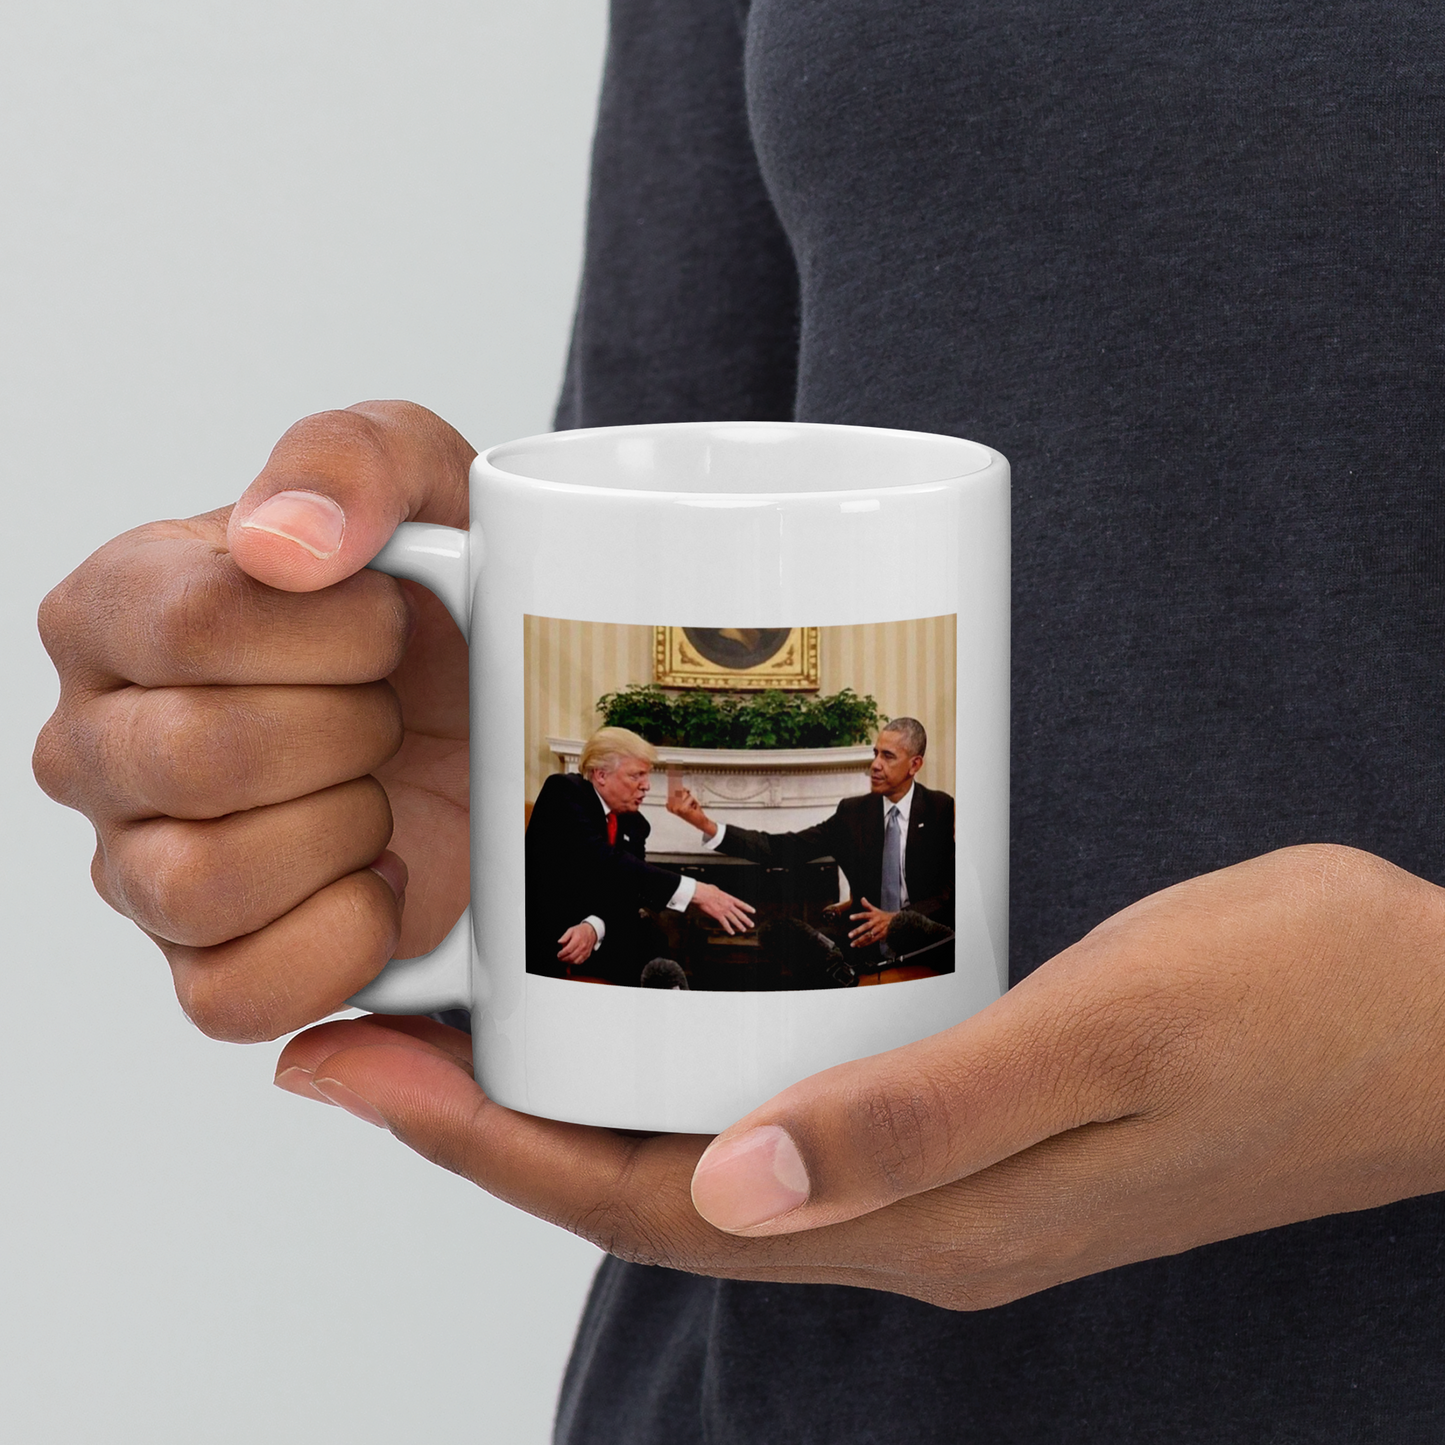 Trump vs. Obama Mug